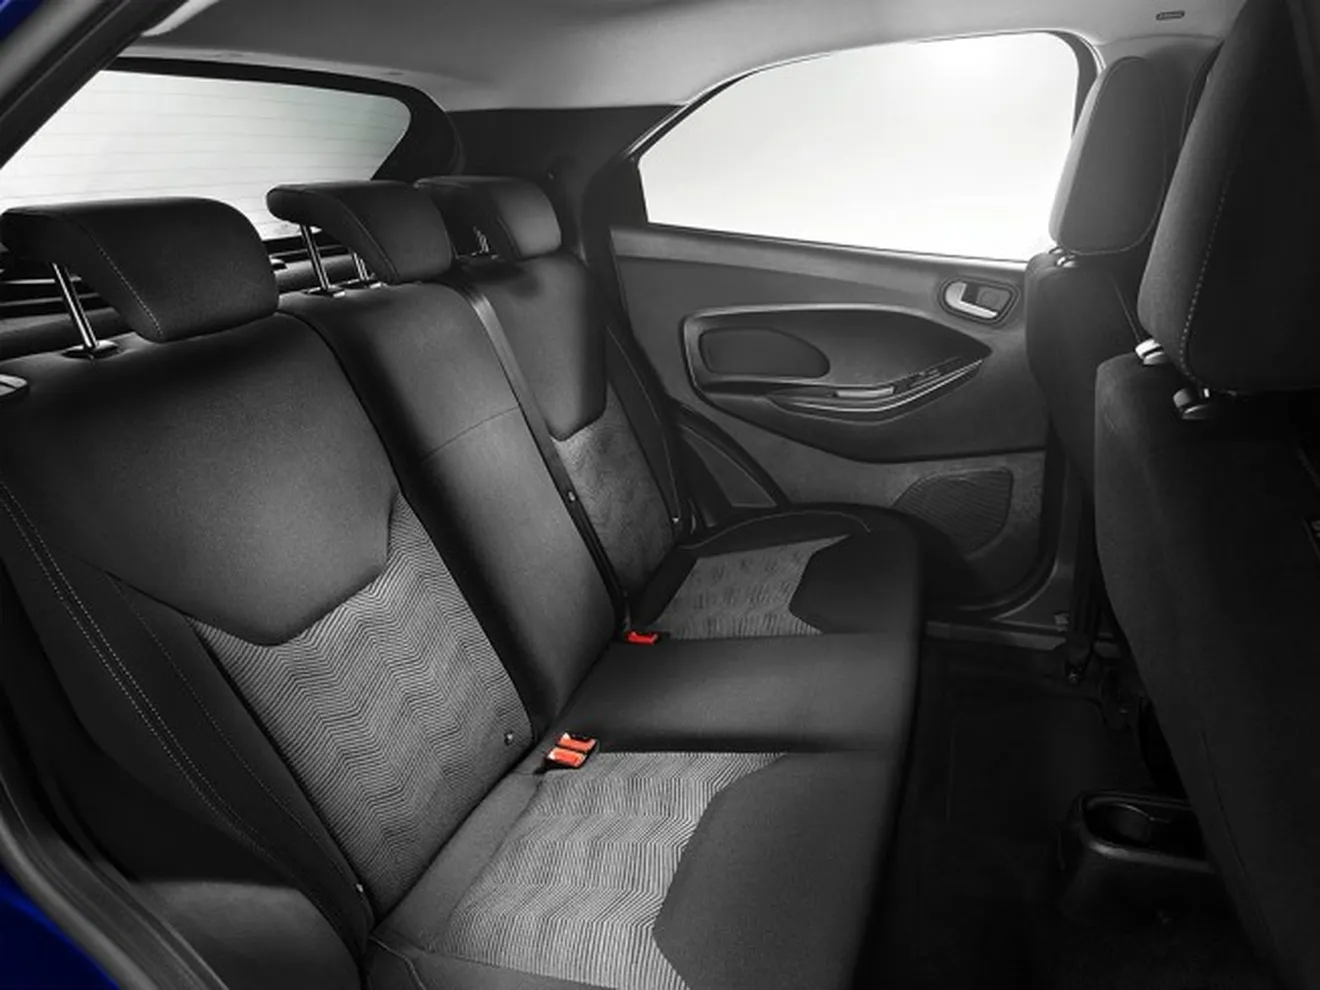 Ford KA+ - interior